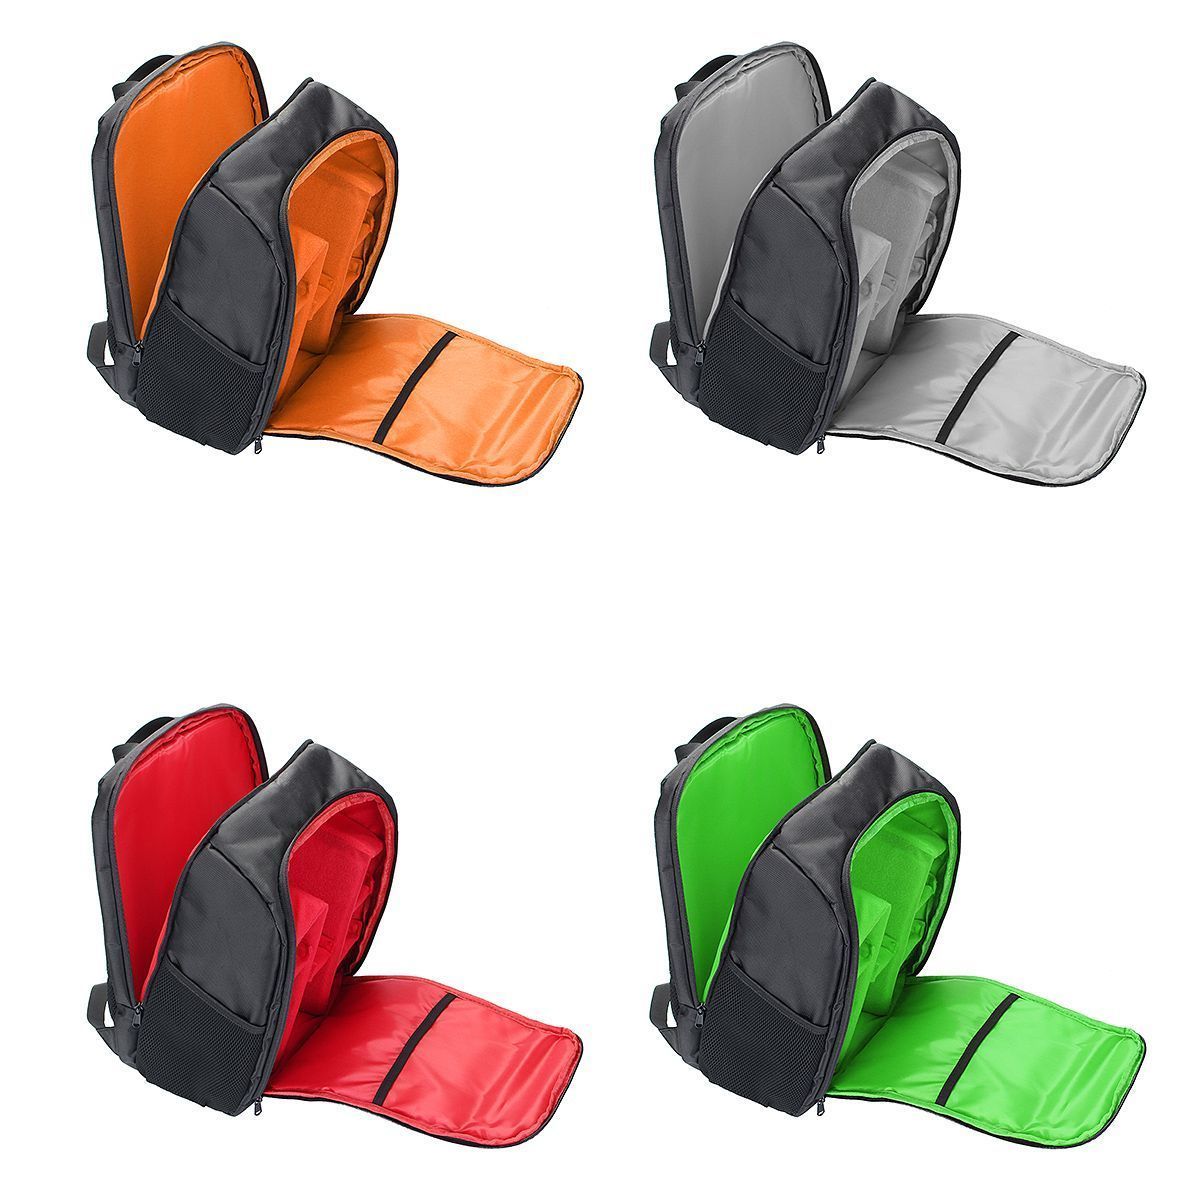 Waterproof-Backpack-Shoulder-Bag-Laptop-Case-For-DSLR-Camera-Lens-Accessories-1401643